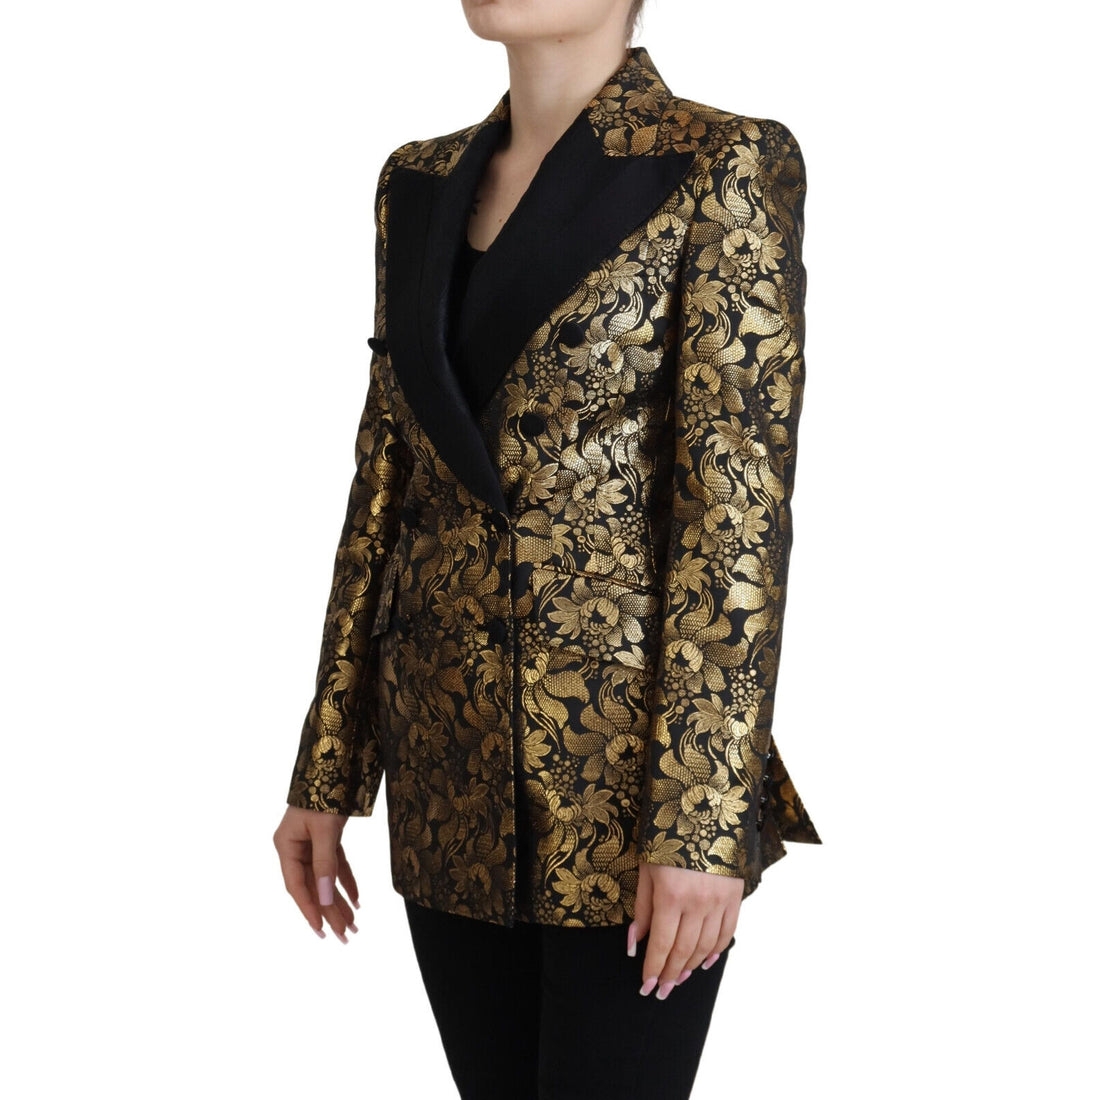 Dolce & Gabbana Elegant Black and Gold Floral Jacket